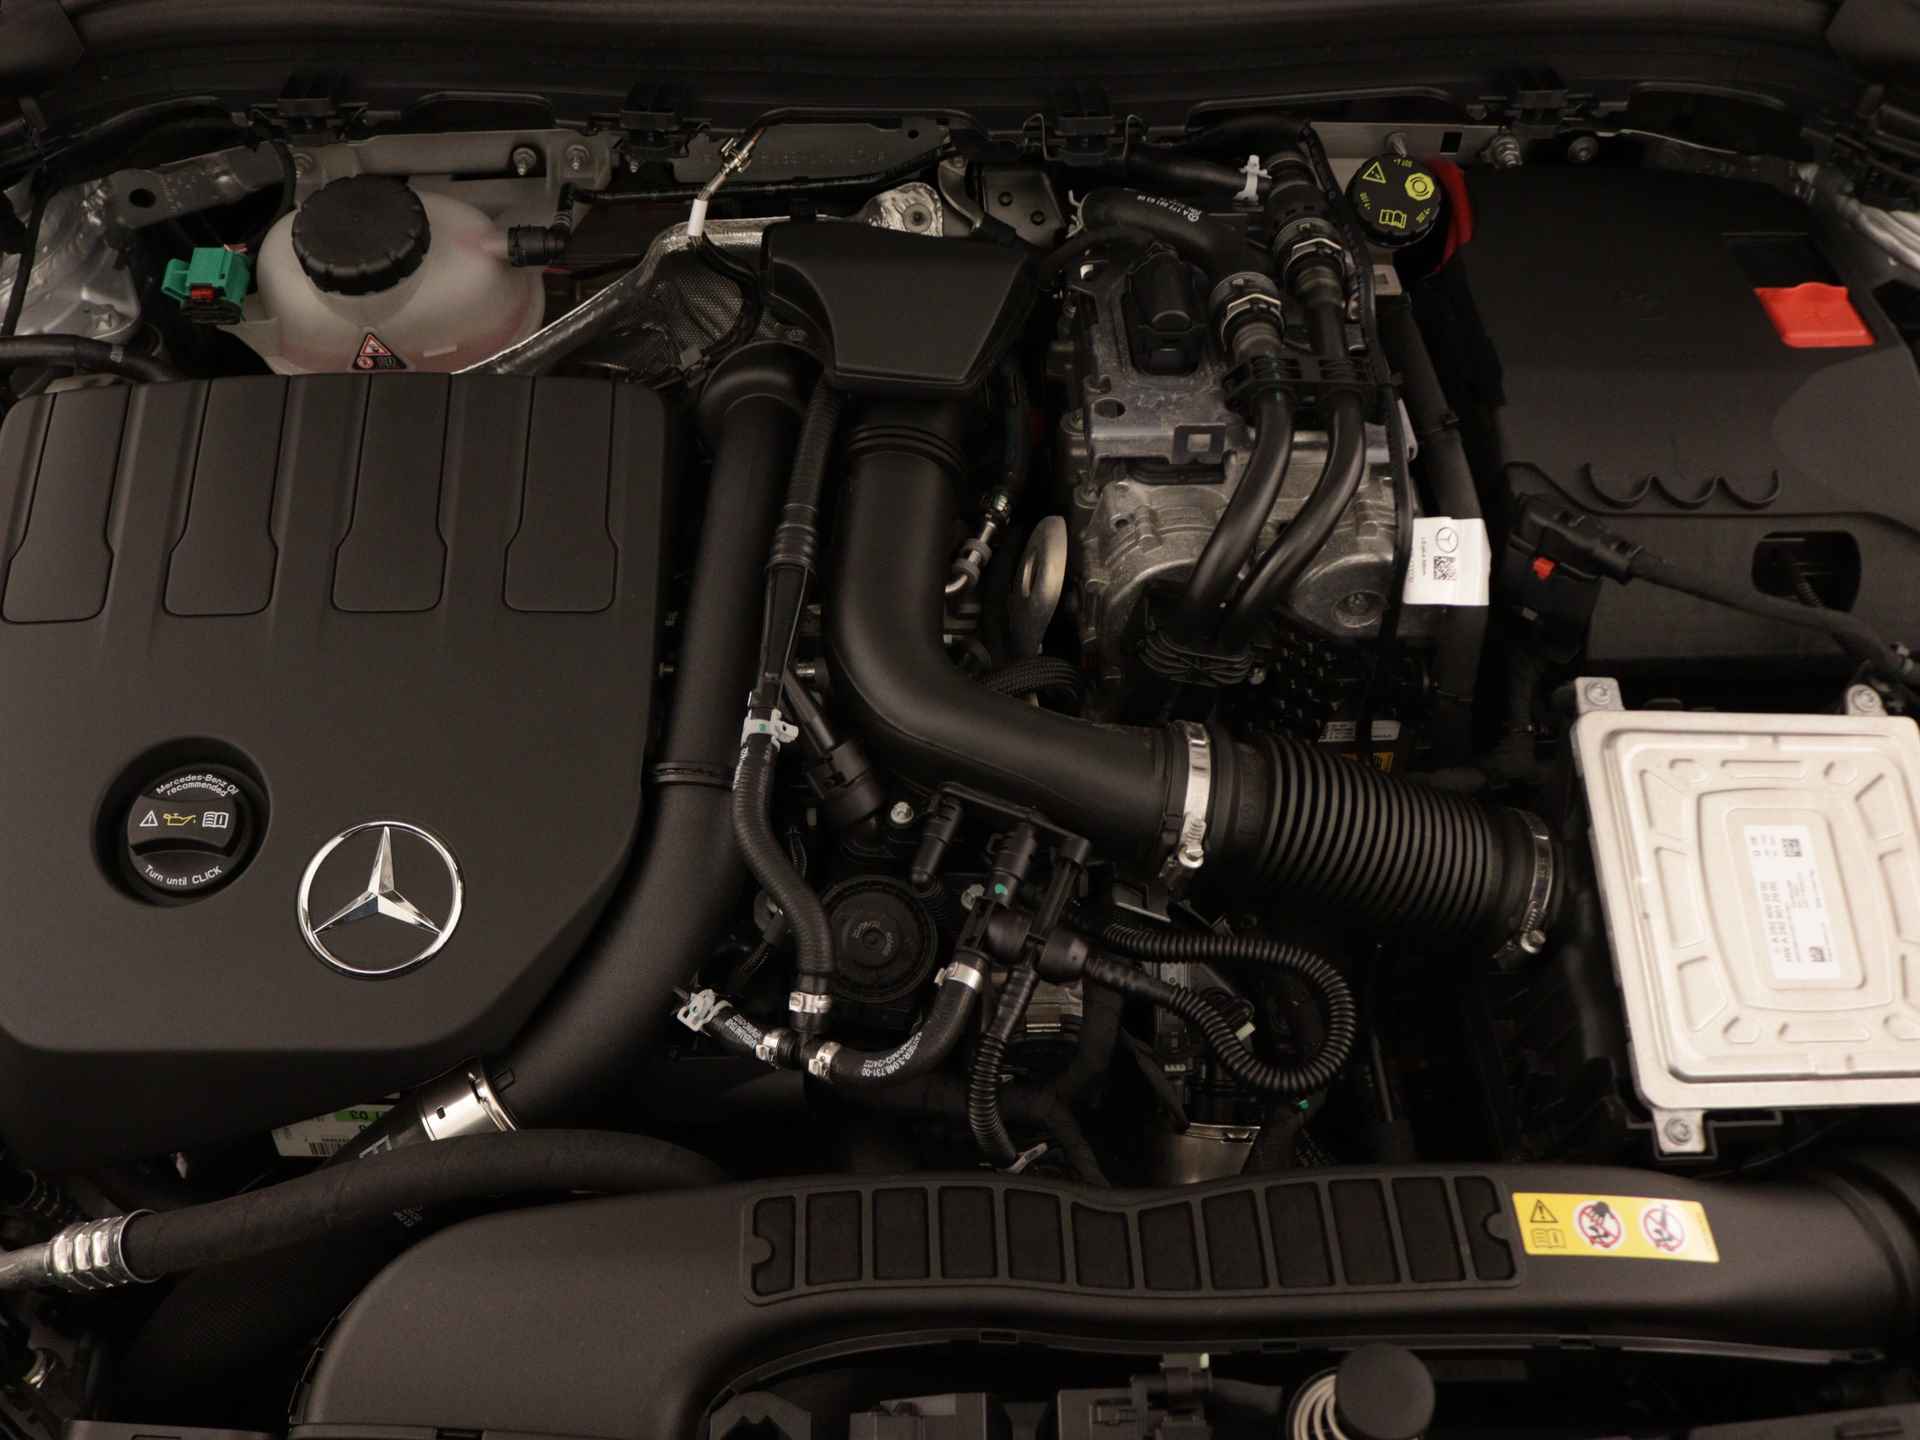 Mercedes-Benz B-Klasse 250 e AMG Line Limited Multispaaks lichtmetalen velgen | MBUX wide screen | Navigatie | Parking support | Inclusief 24 maanden Mercedes-Benz Certified garantie voor Europa. | - 41/45